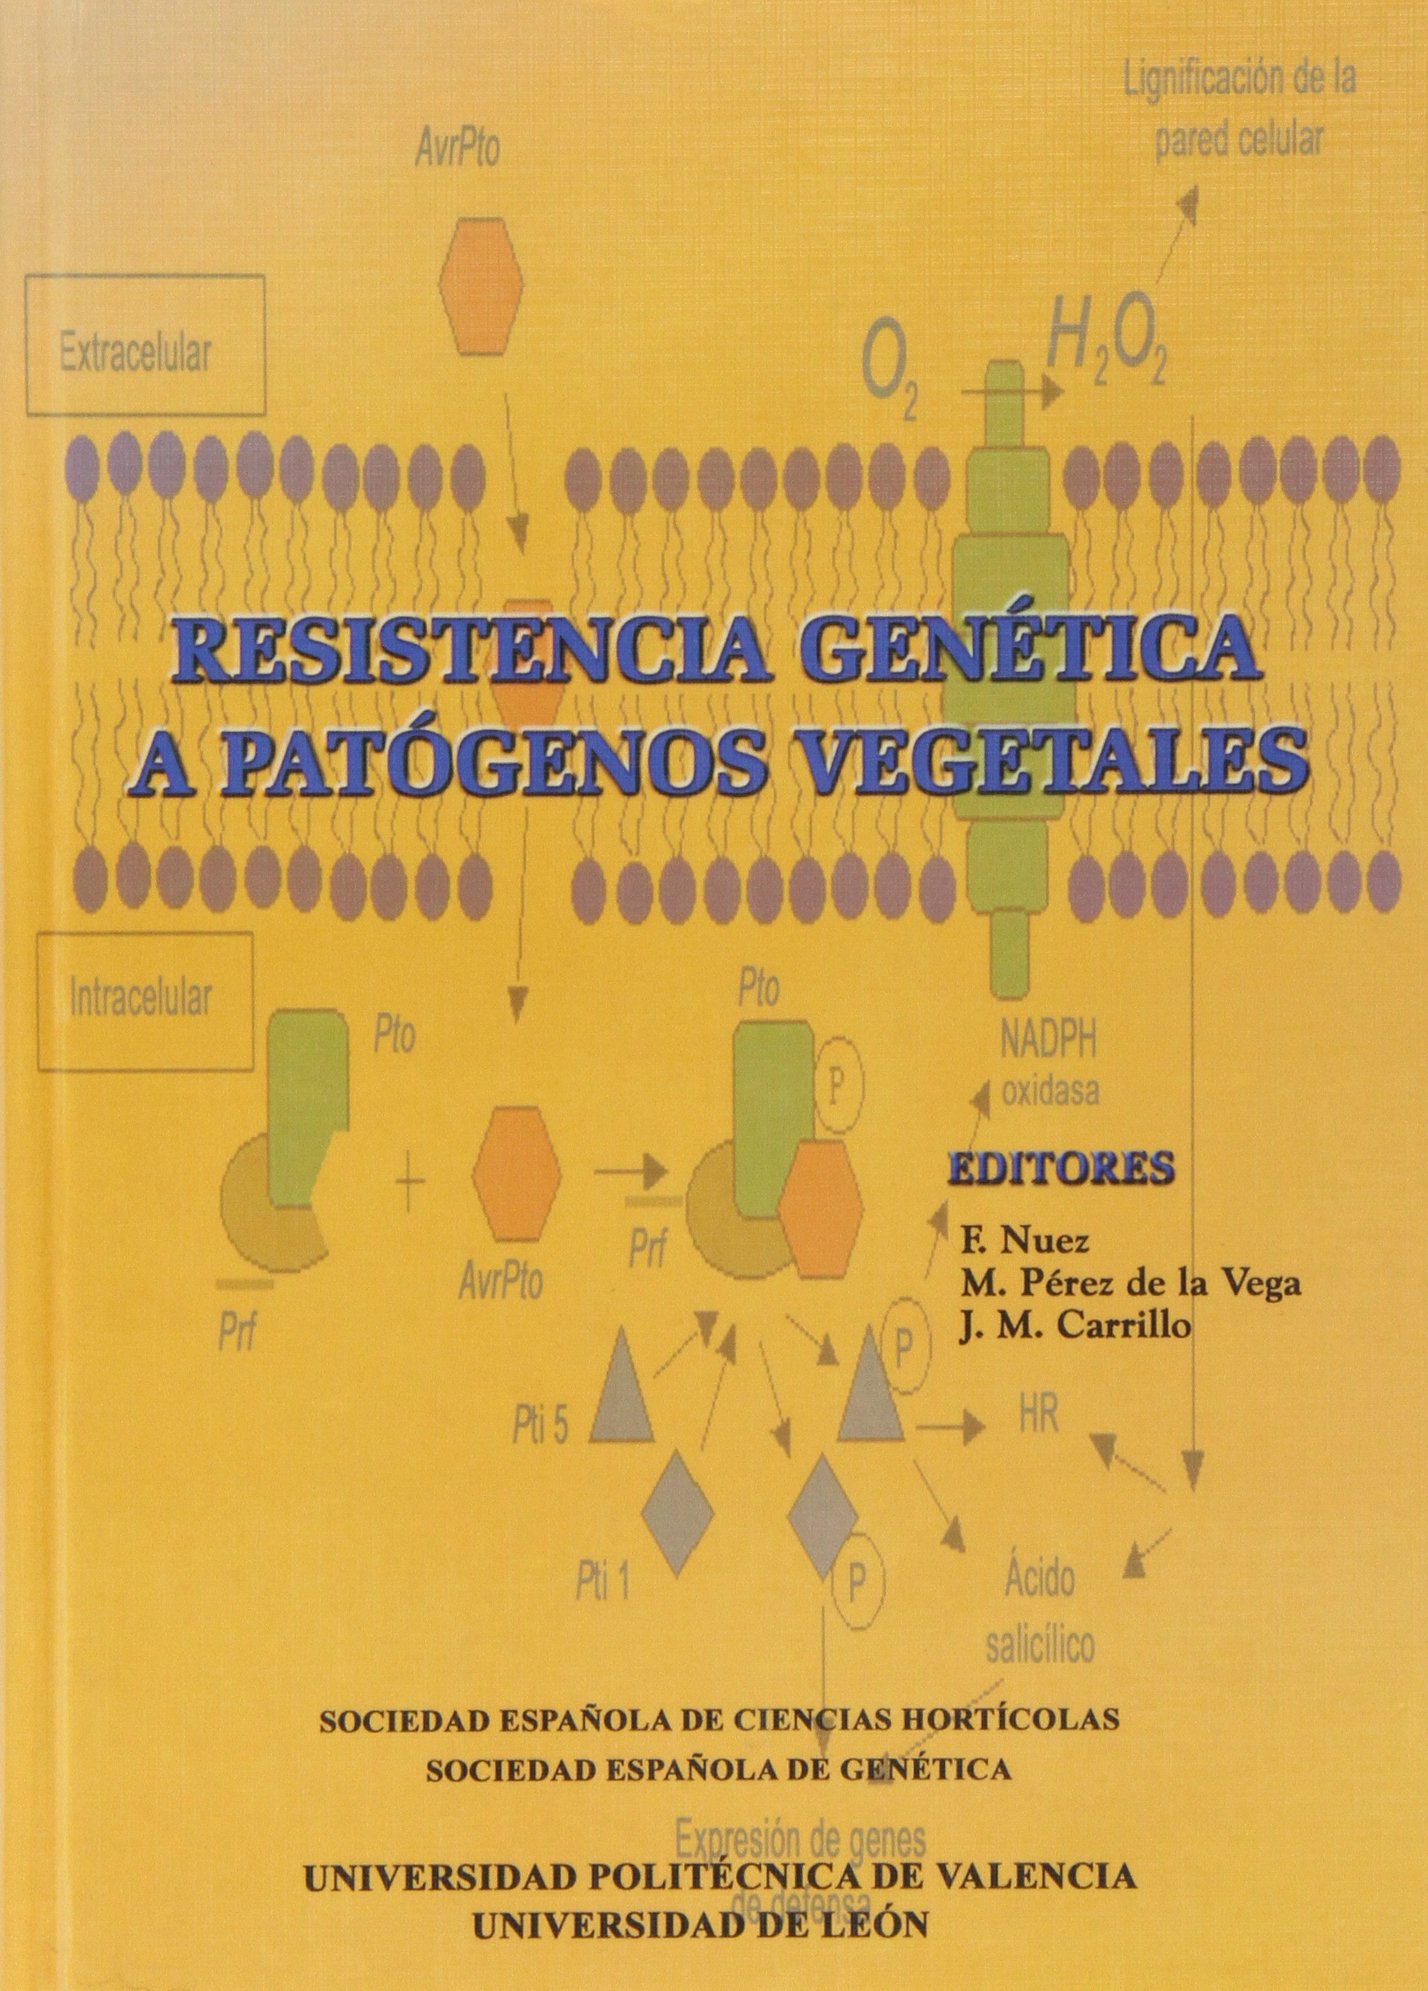 Imagen de portada del libro Resistencia genética a patógenos vegetales